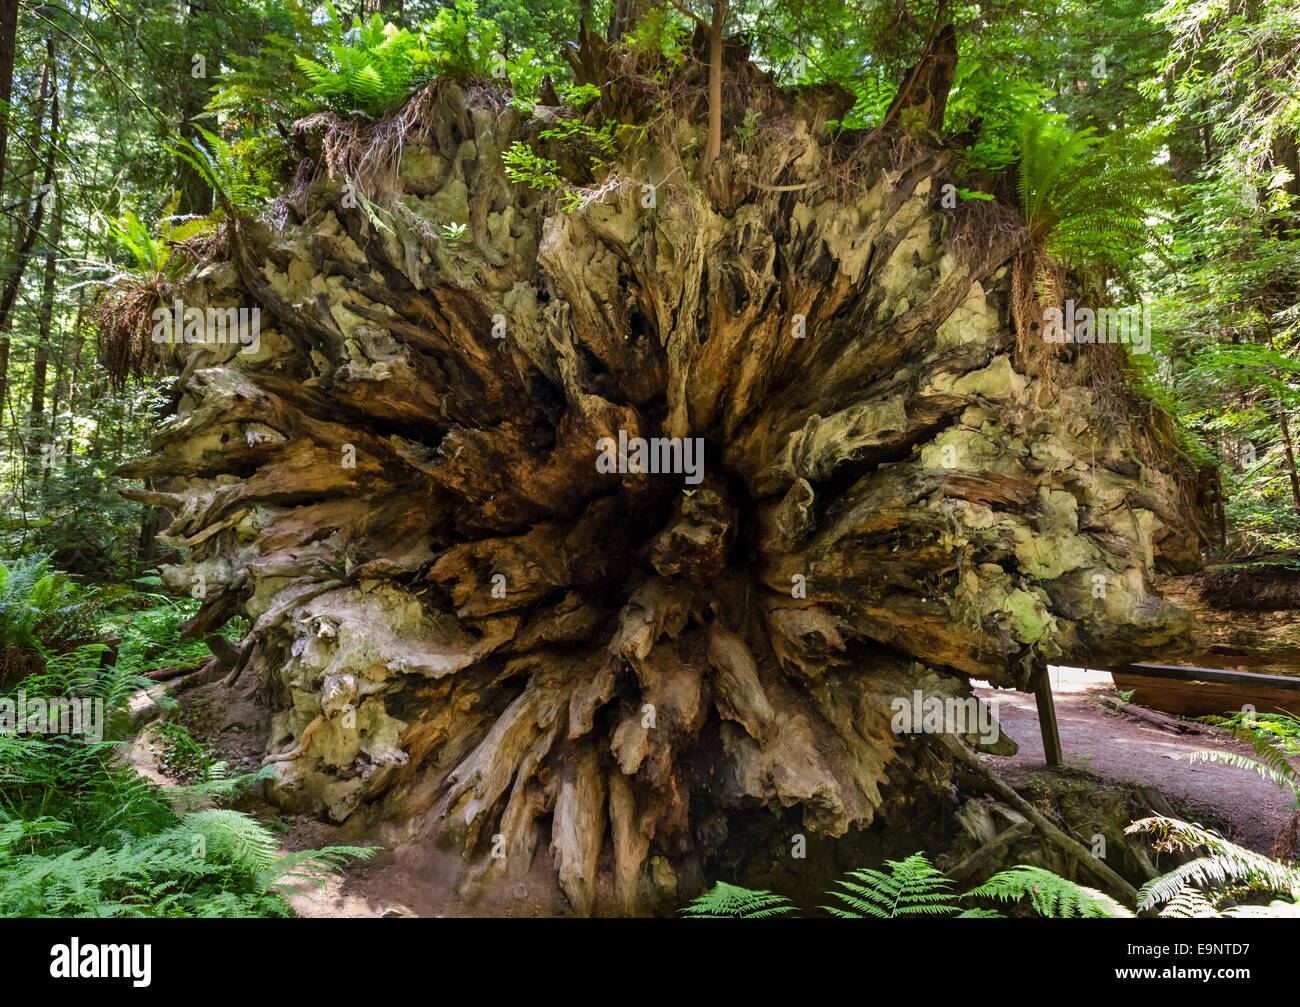 Fallen tronc d'un séquoia côtier géant (Sequoia sempervirens) Humboldt Redwoods State Park, dans le Nord de la Californie, USA Banque D'Images